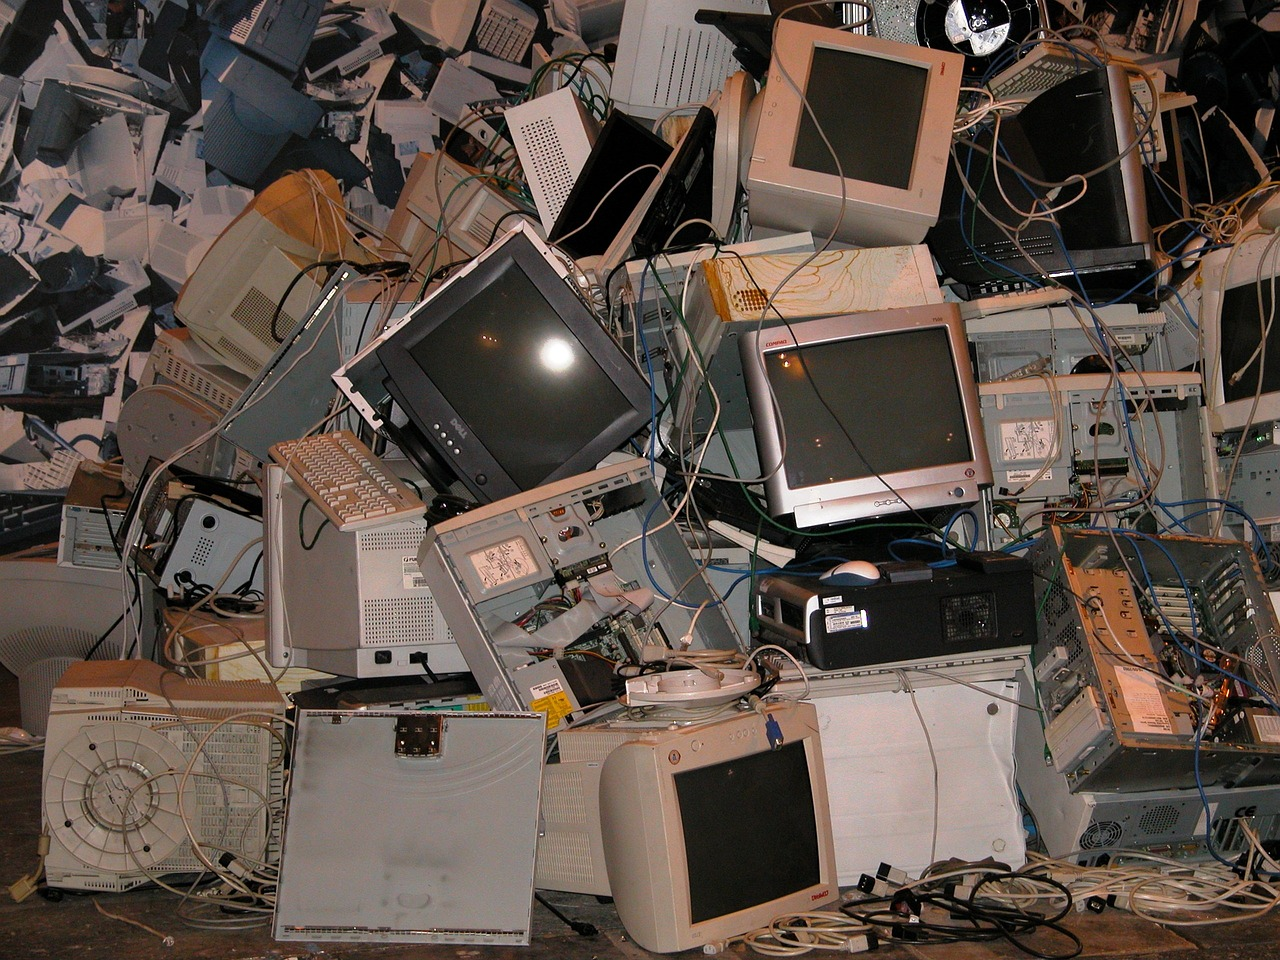 Piled up electronic waste